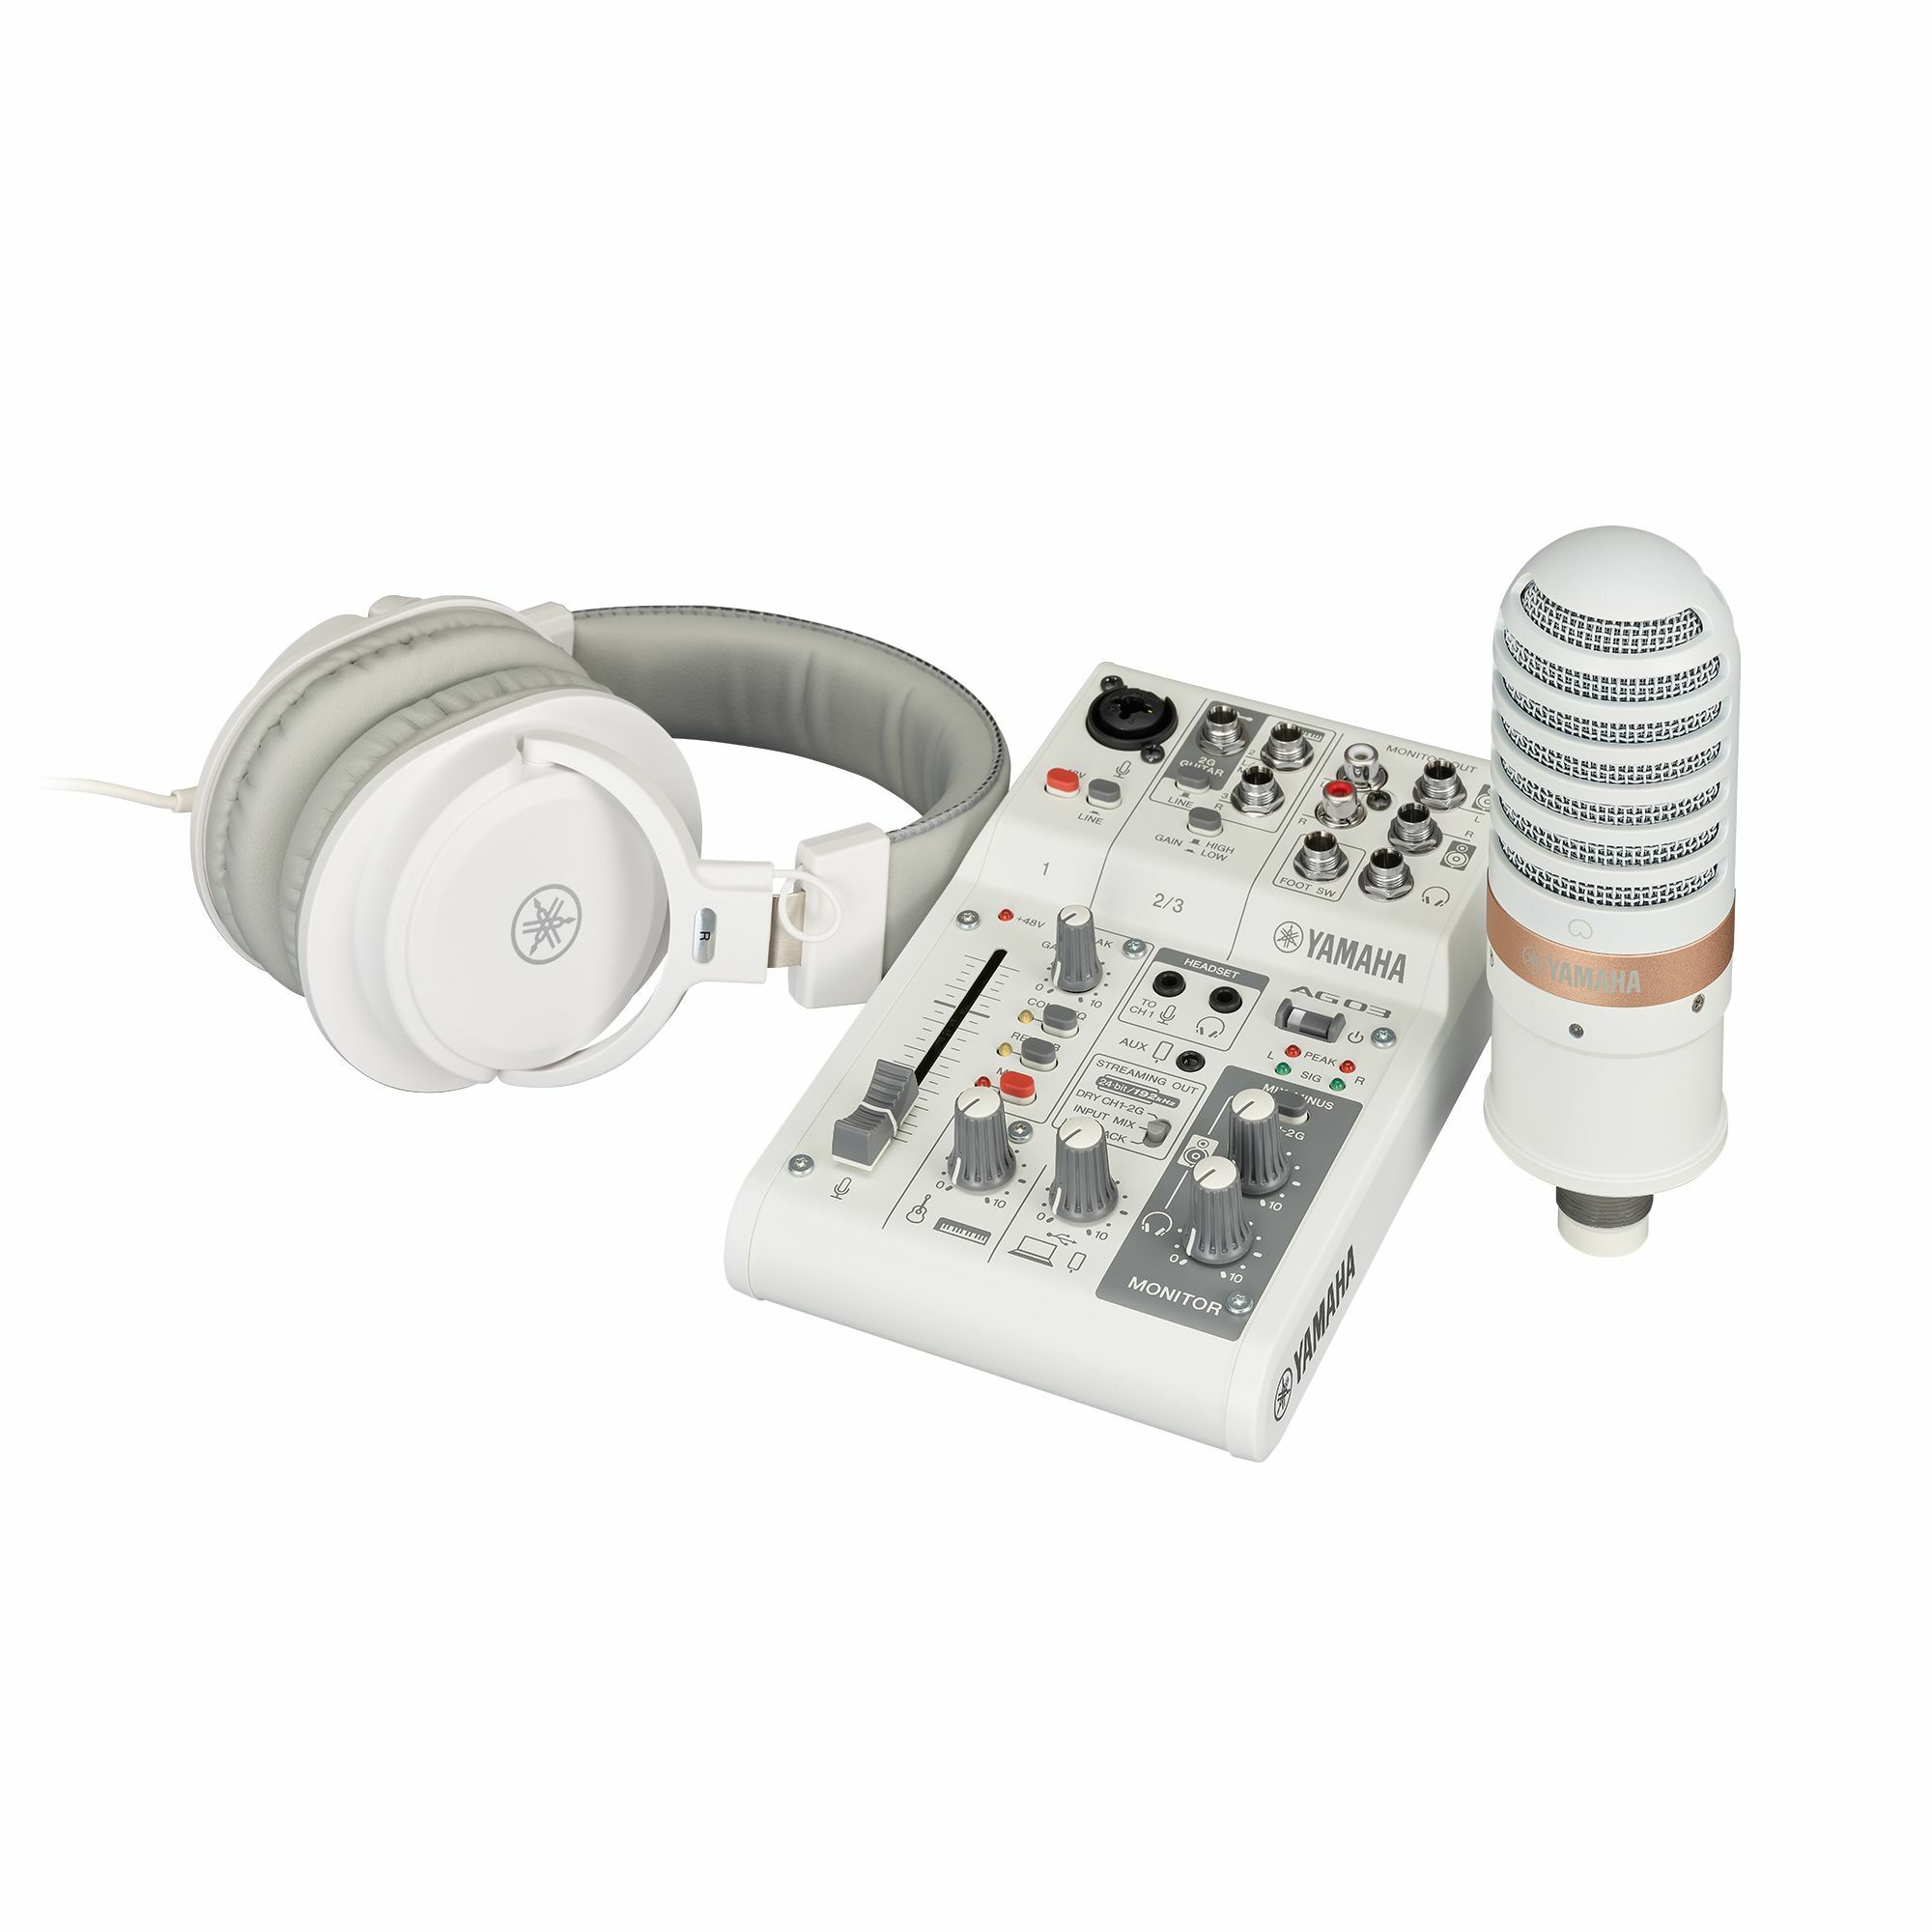 現貨庫存】Yamaha AG03MK2 LSPK 網路直播套組Podcast 錄音介面混音機